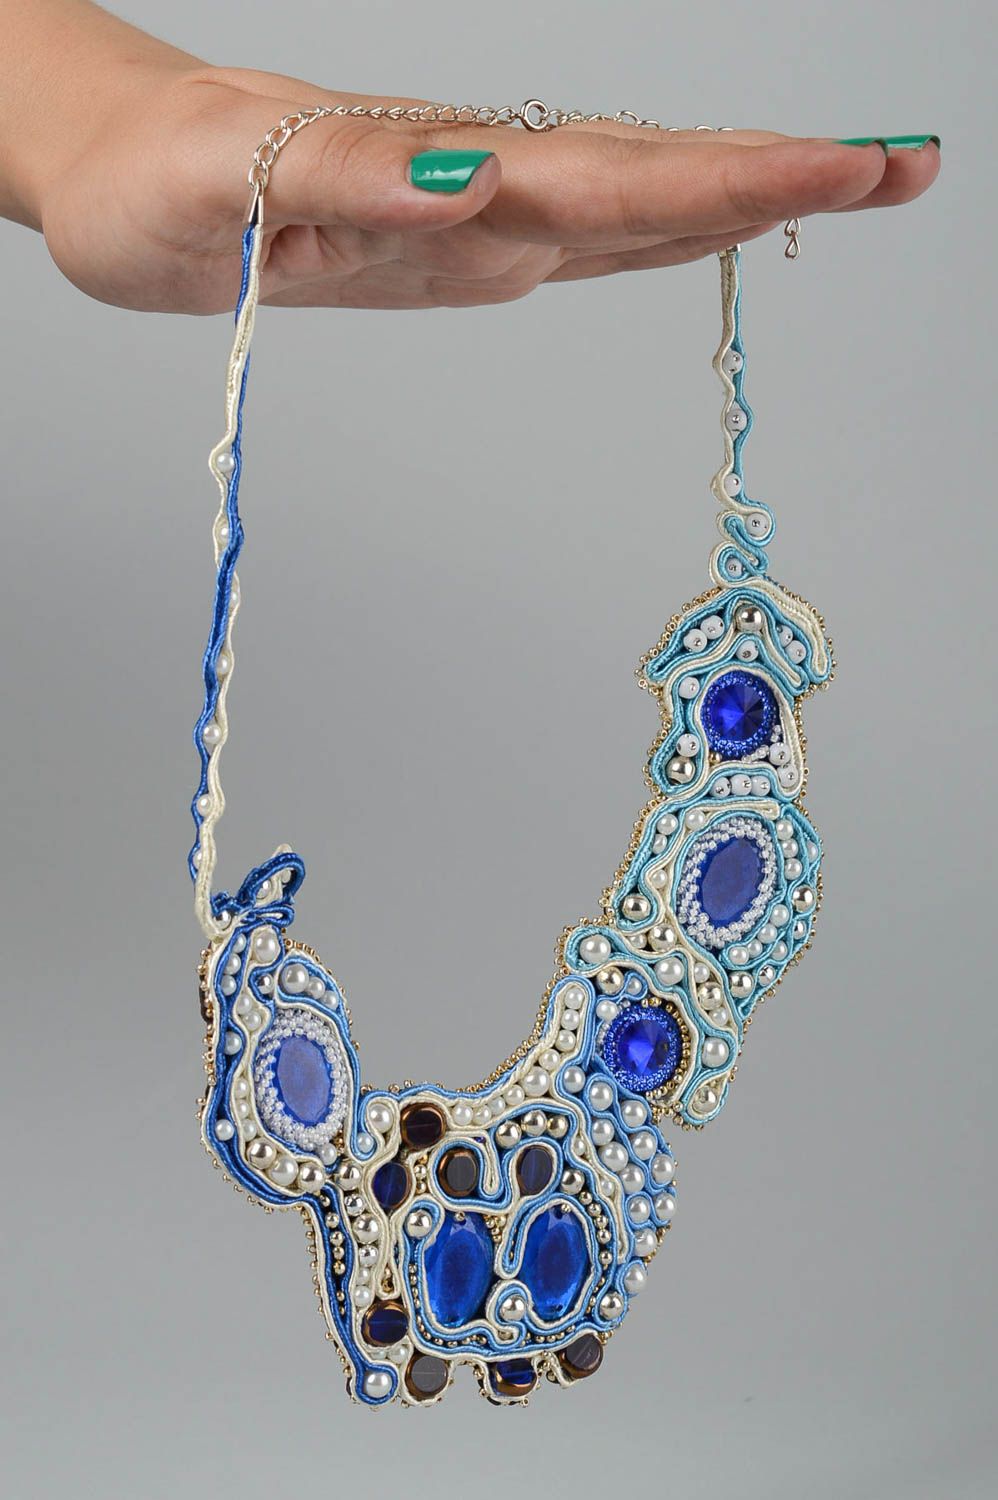 Колье сутажная вышивка хэнд мэйд вышитое ожерелье сутажное колье синее  фото 5